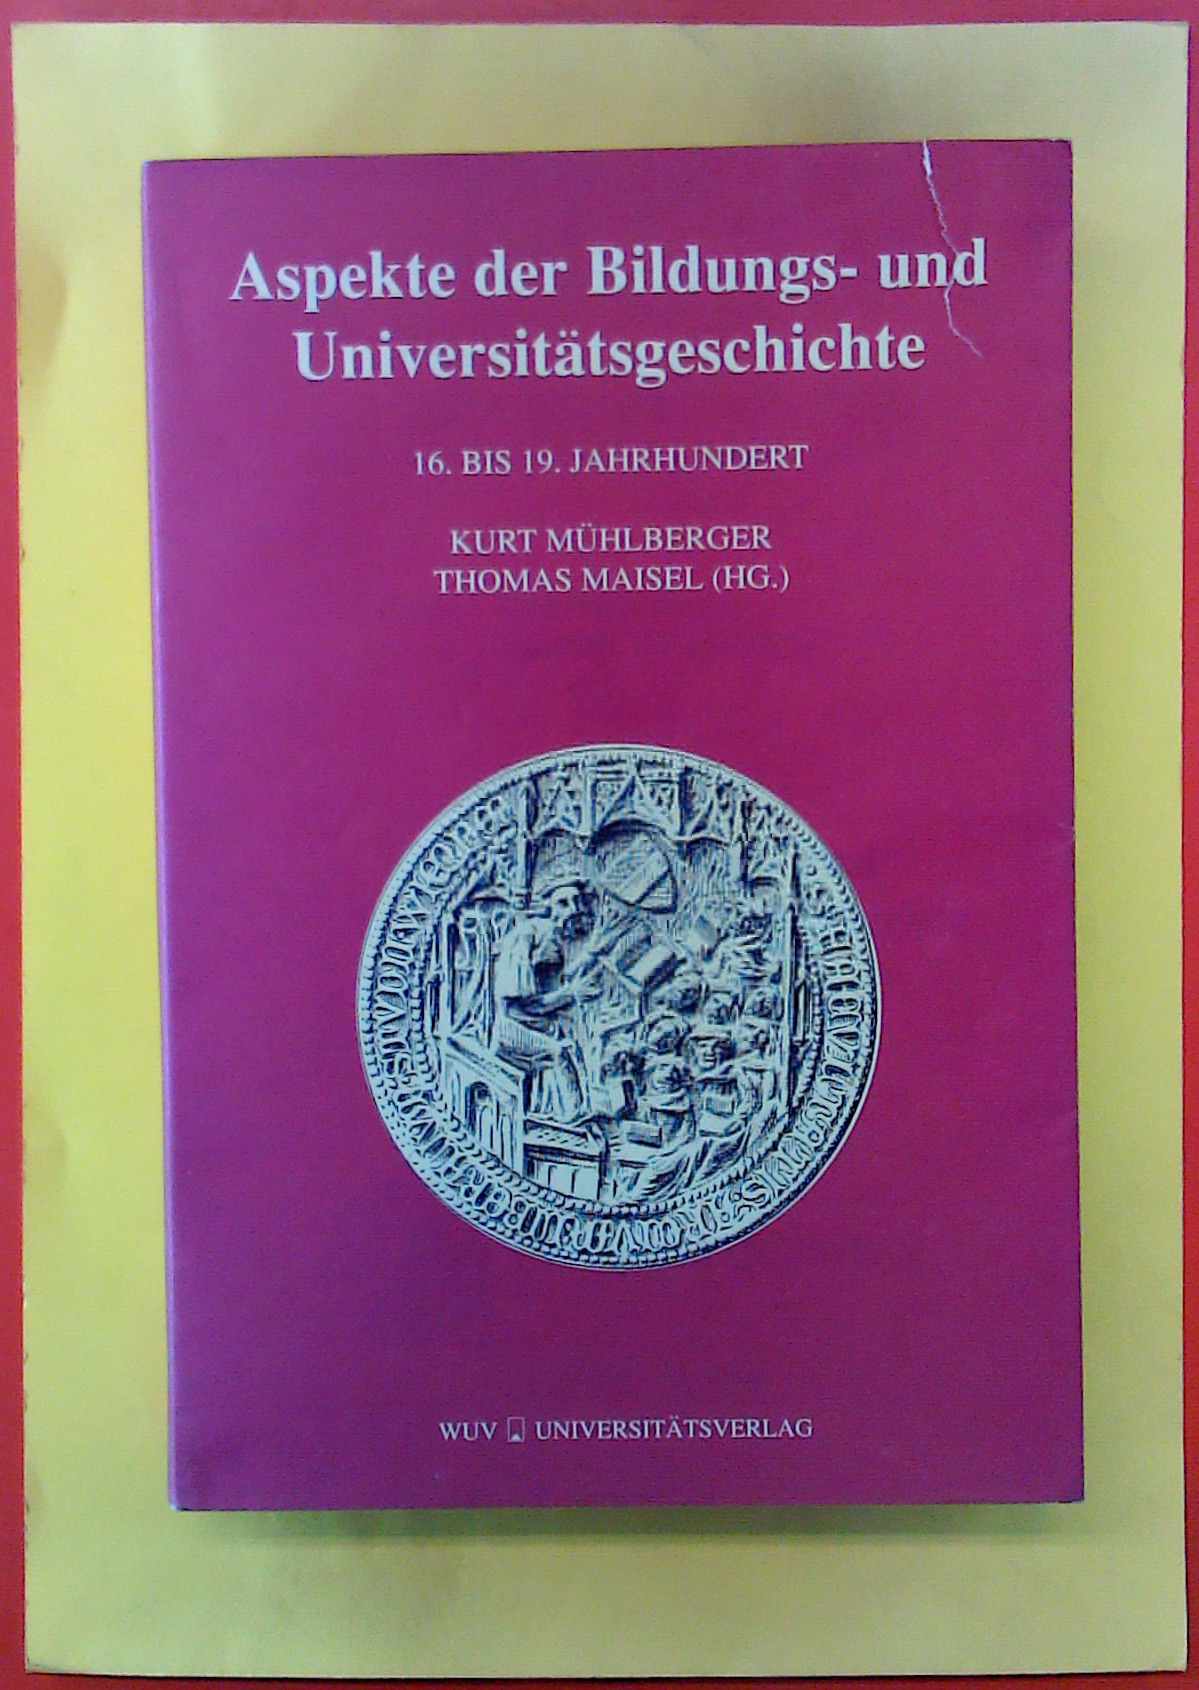 Aspekte der Bildungs- und Universitätsgeschichte. 16. bis 19. Jahrhundert. - Kurt Mühlberger, Thomas Maisel (Hg.)